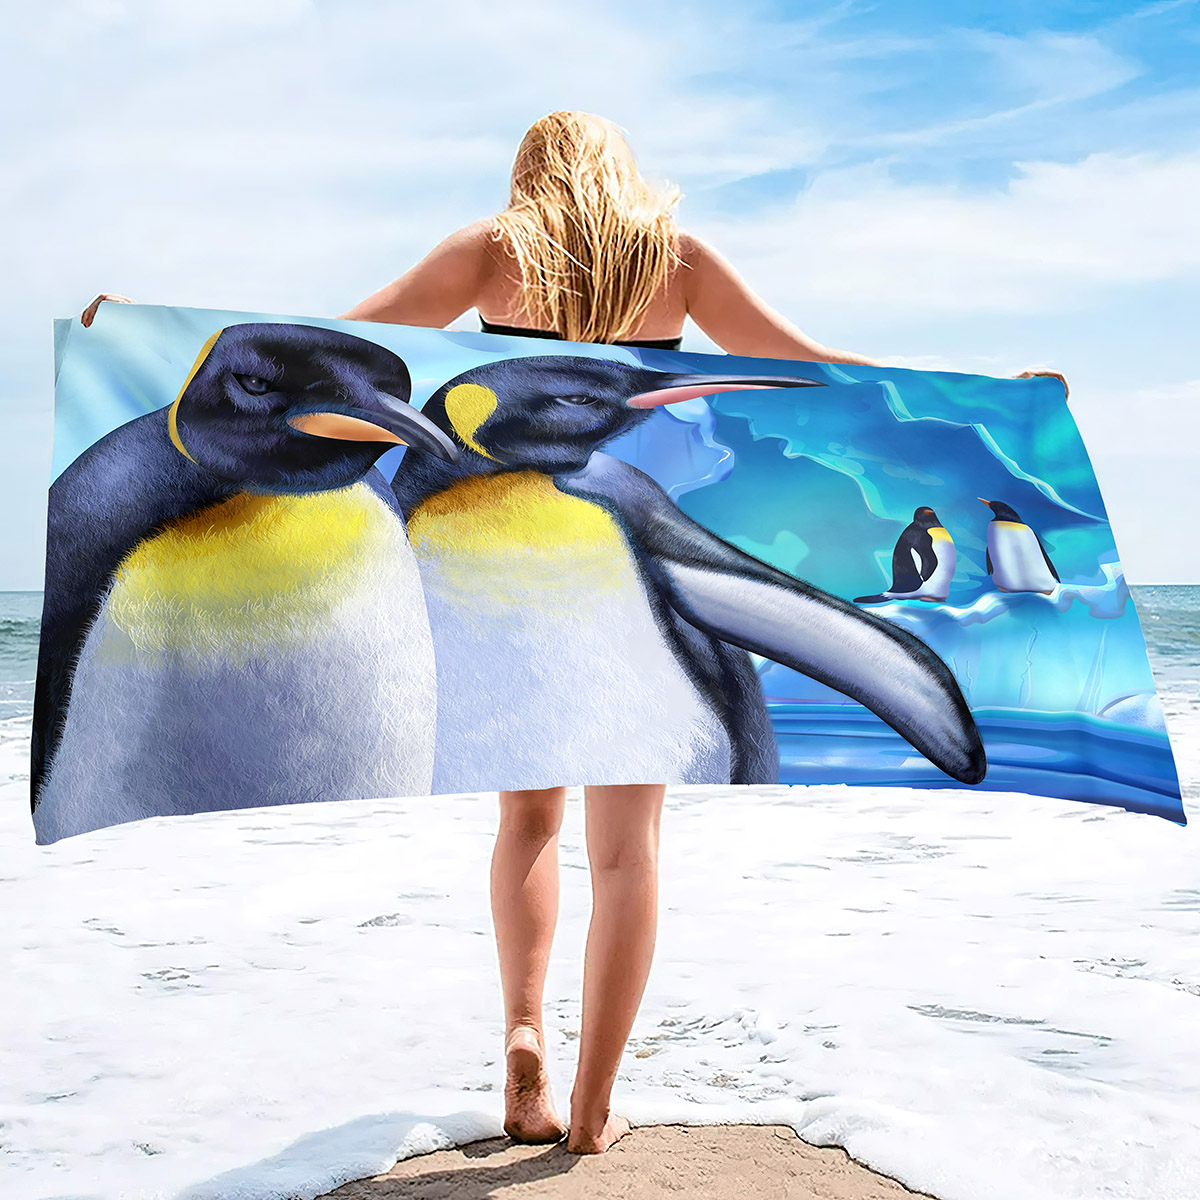 Pingwin Bird Bachowe Ręczniki Szybko suche mikrofibry miękki i chłonny ręcznik do kąpieli na zewnątrz Podróżowy piasek Bezpłatny ręcznik plażowy